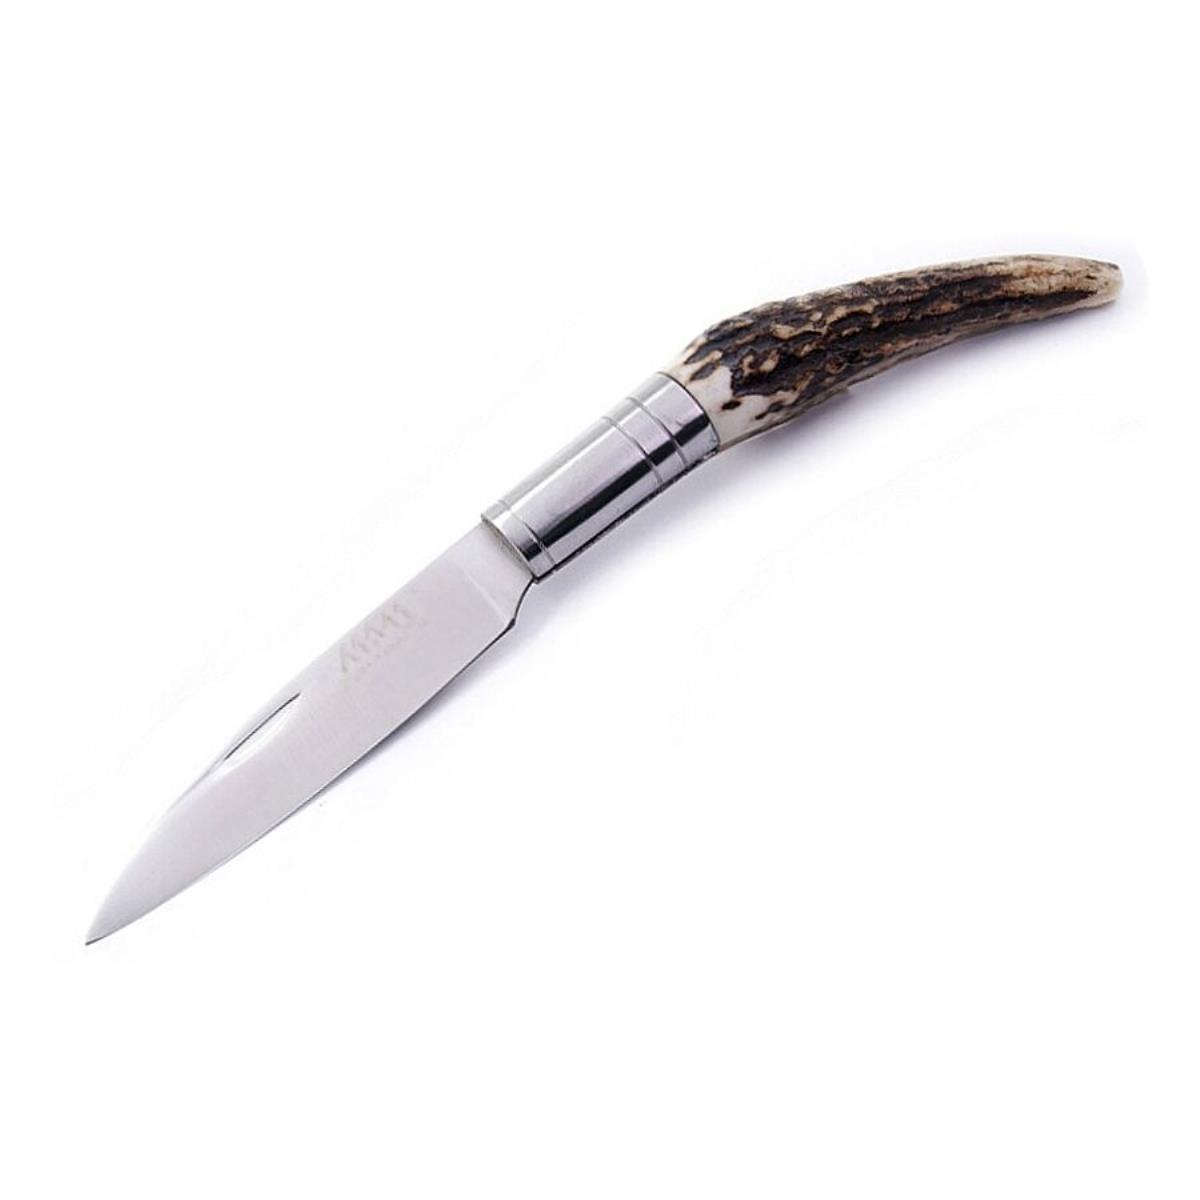 Нож Navalha 2014 сручкой из оленьего рога MAM горизонтальный для складного ножа на пояс 120 мм